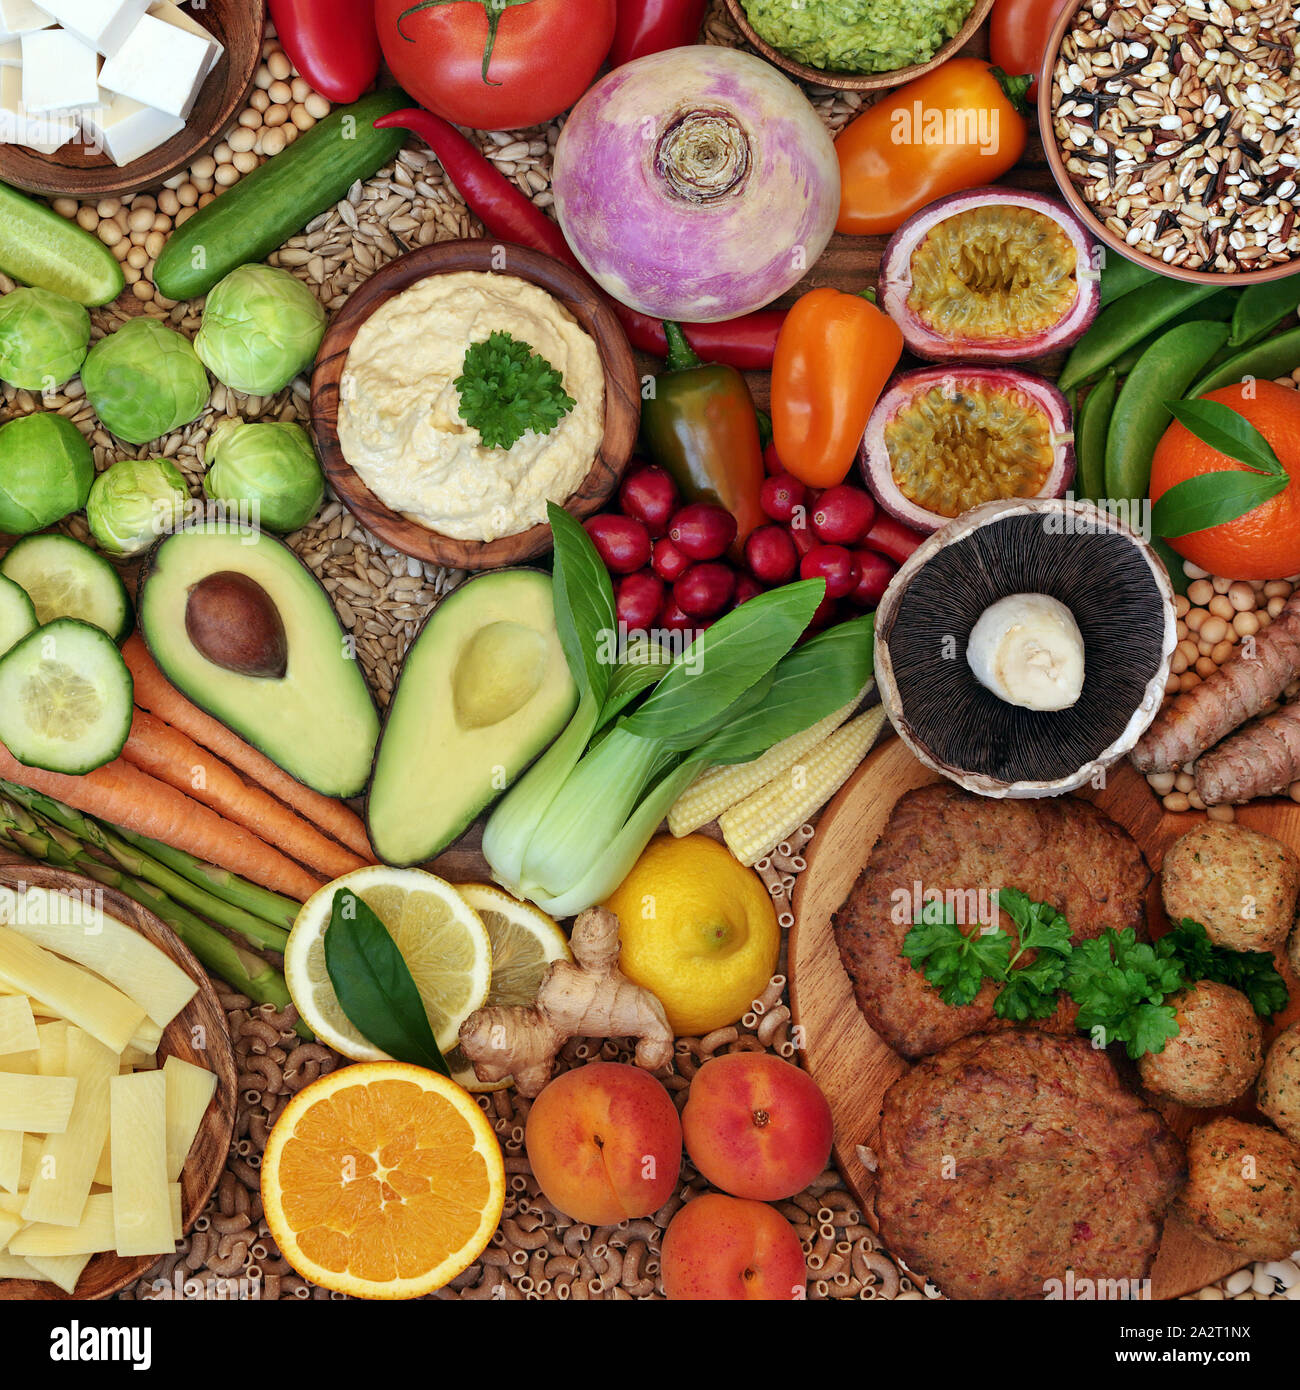 Collecte d'aliments végétaliens avec des aliments riches en protéines, antioxydants, vitamines, les anthocyanes, oméga 3, minéraux et fibres alimentaires glucides intelligente. Mise à plat Banque D'Images